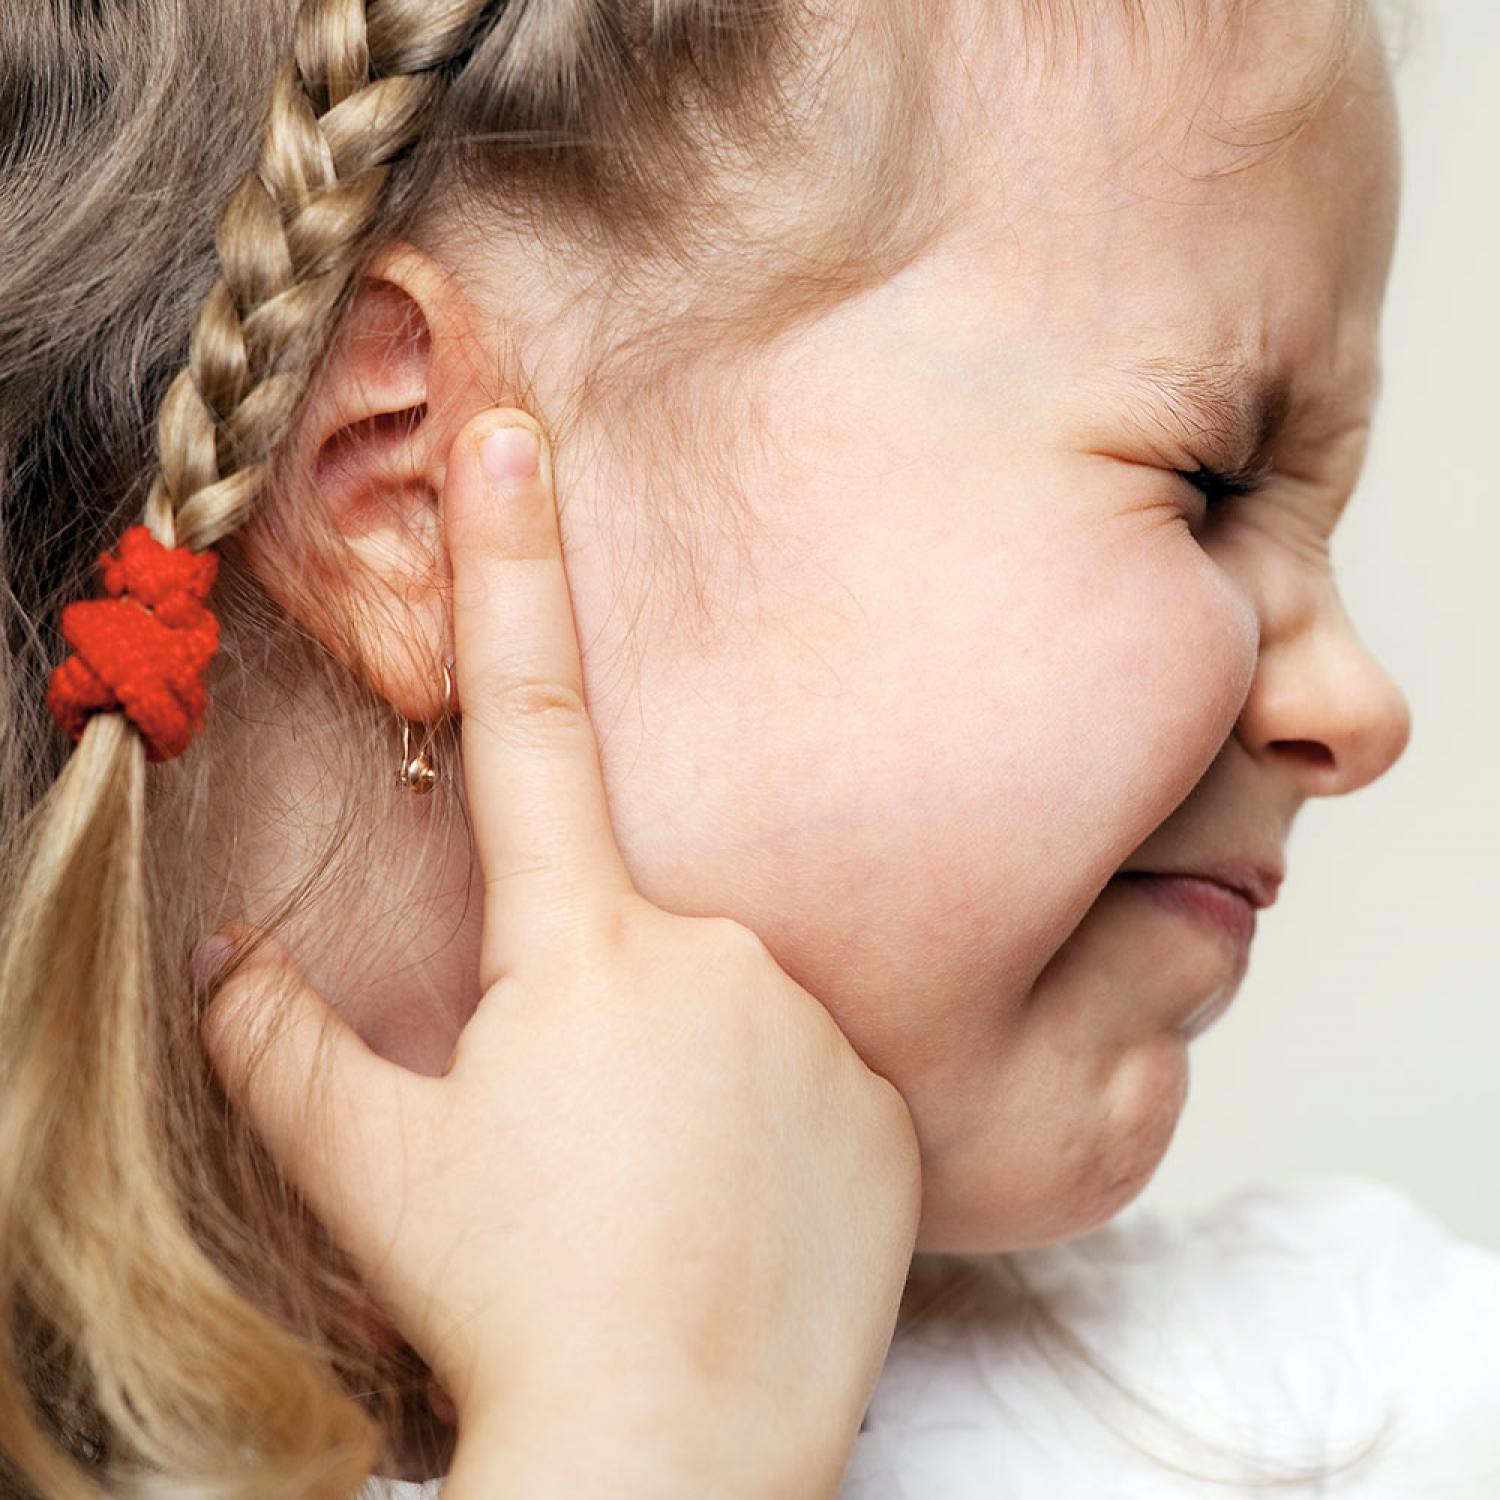 Chỉ mặt 5 triệu chứng viêm tai ngoài ở trẻ em - Ảnh 1.